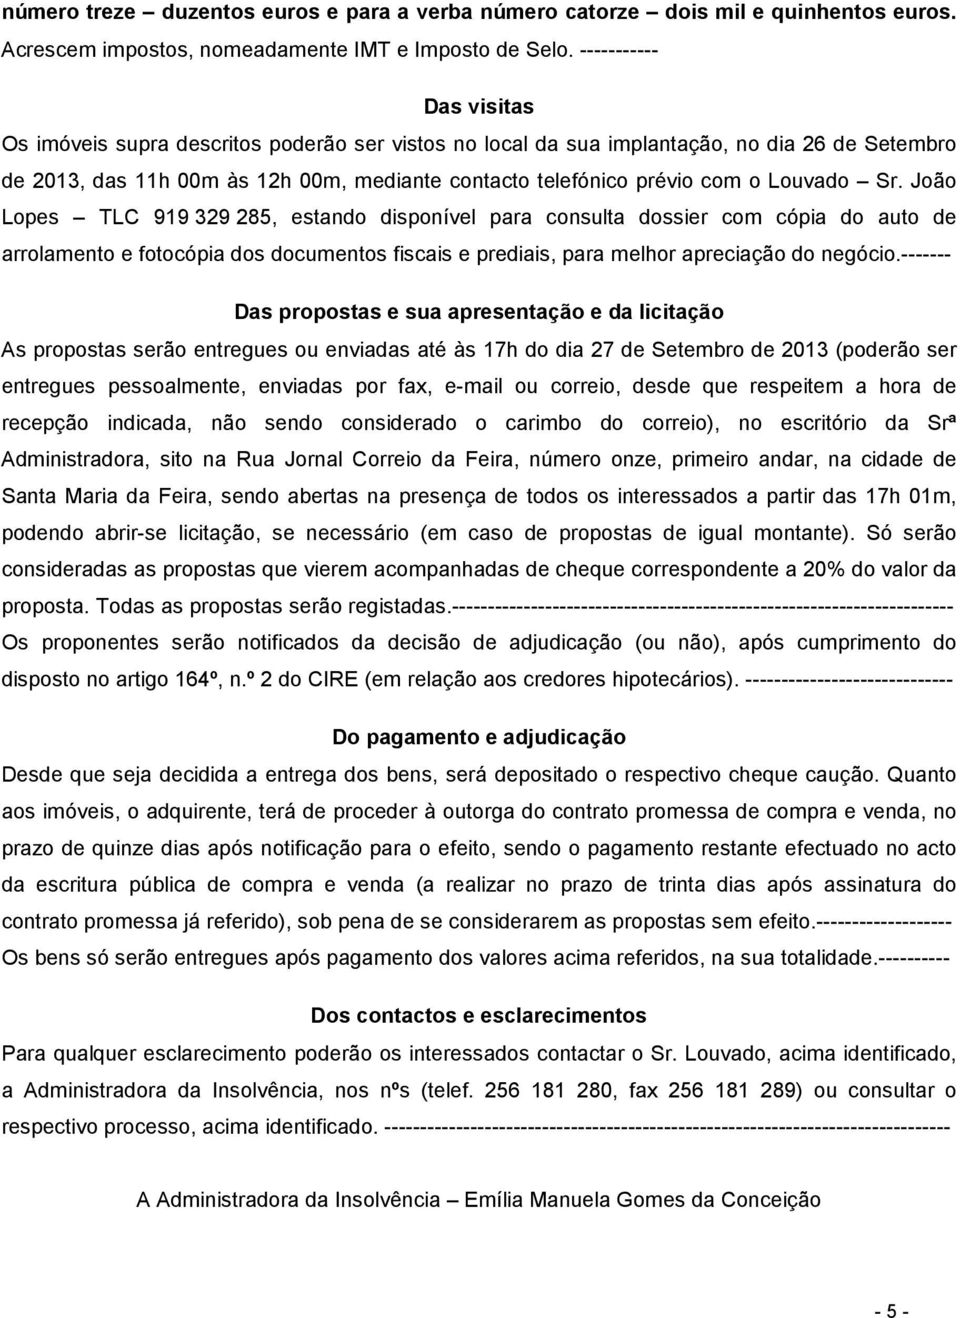 Louvado Sr. João Lopes TLC 919 329 285, estando disponível para consulta dossier com cópia do auto de arrolamento e fotocópia dos documentos fiscais e prediais, para melhor apreciação do negócio.